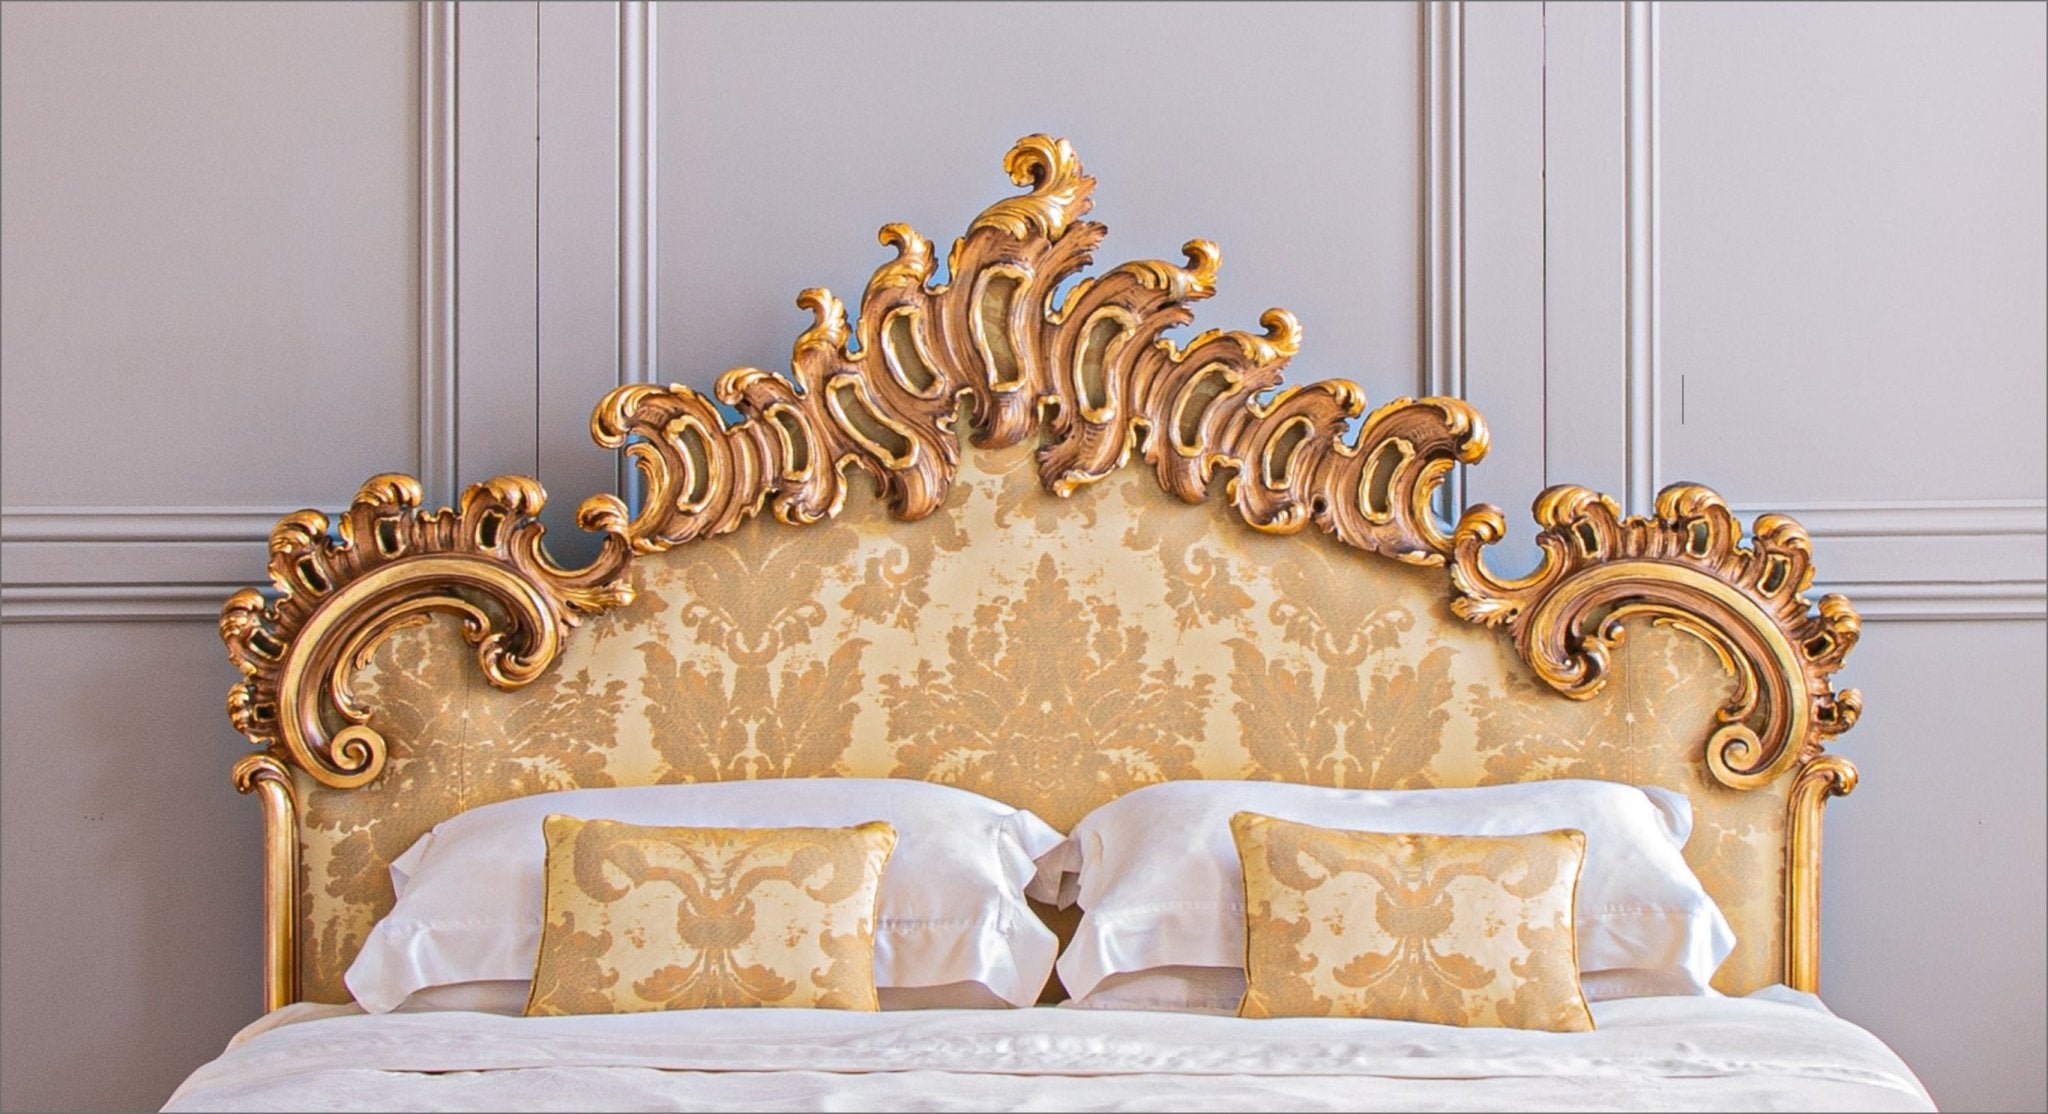 Rococo Style Furniture - La Maison London